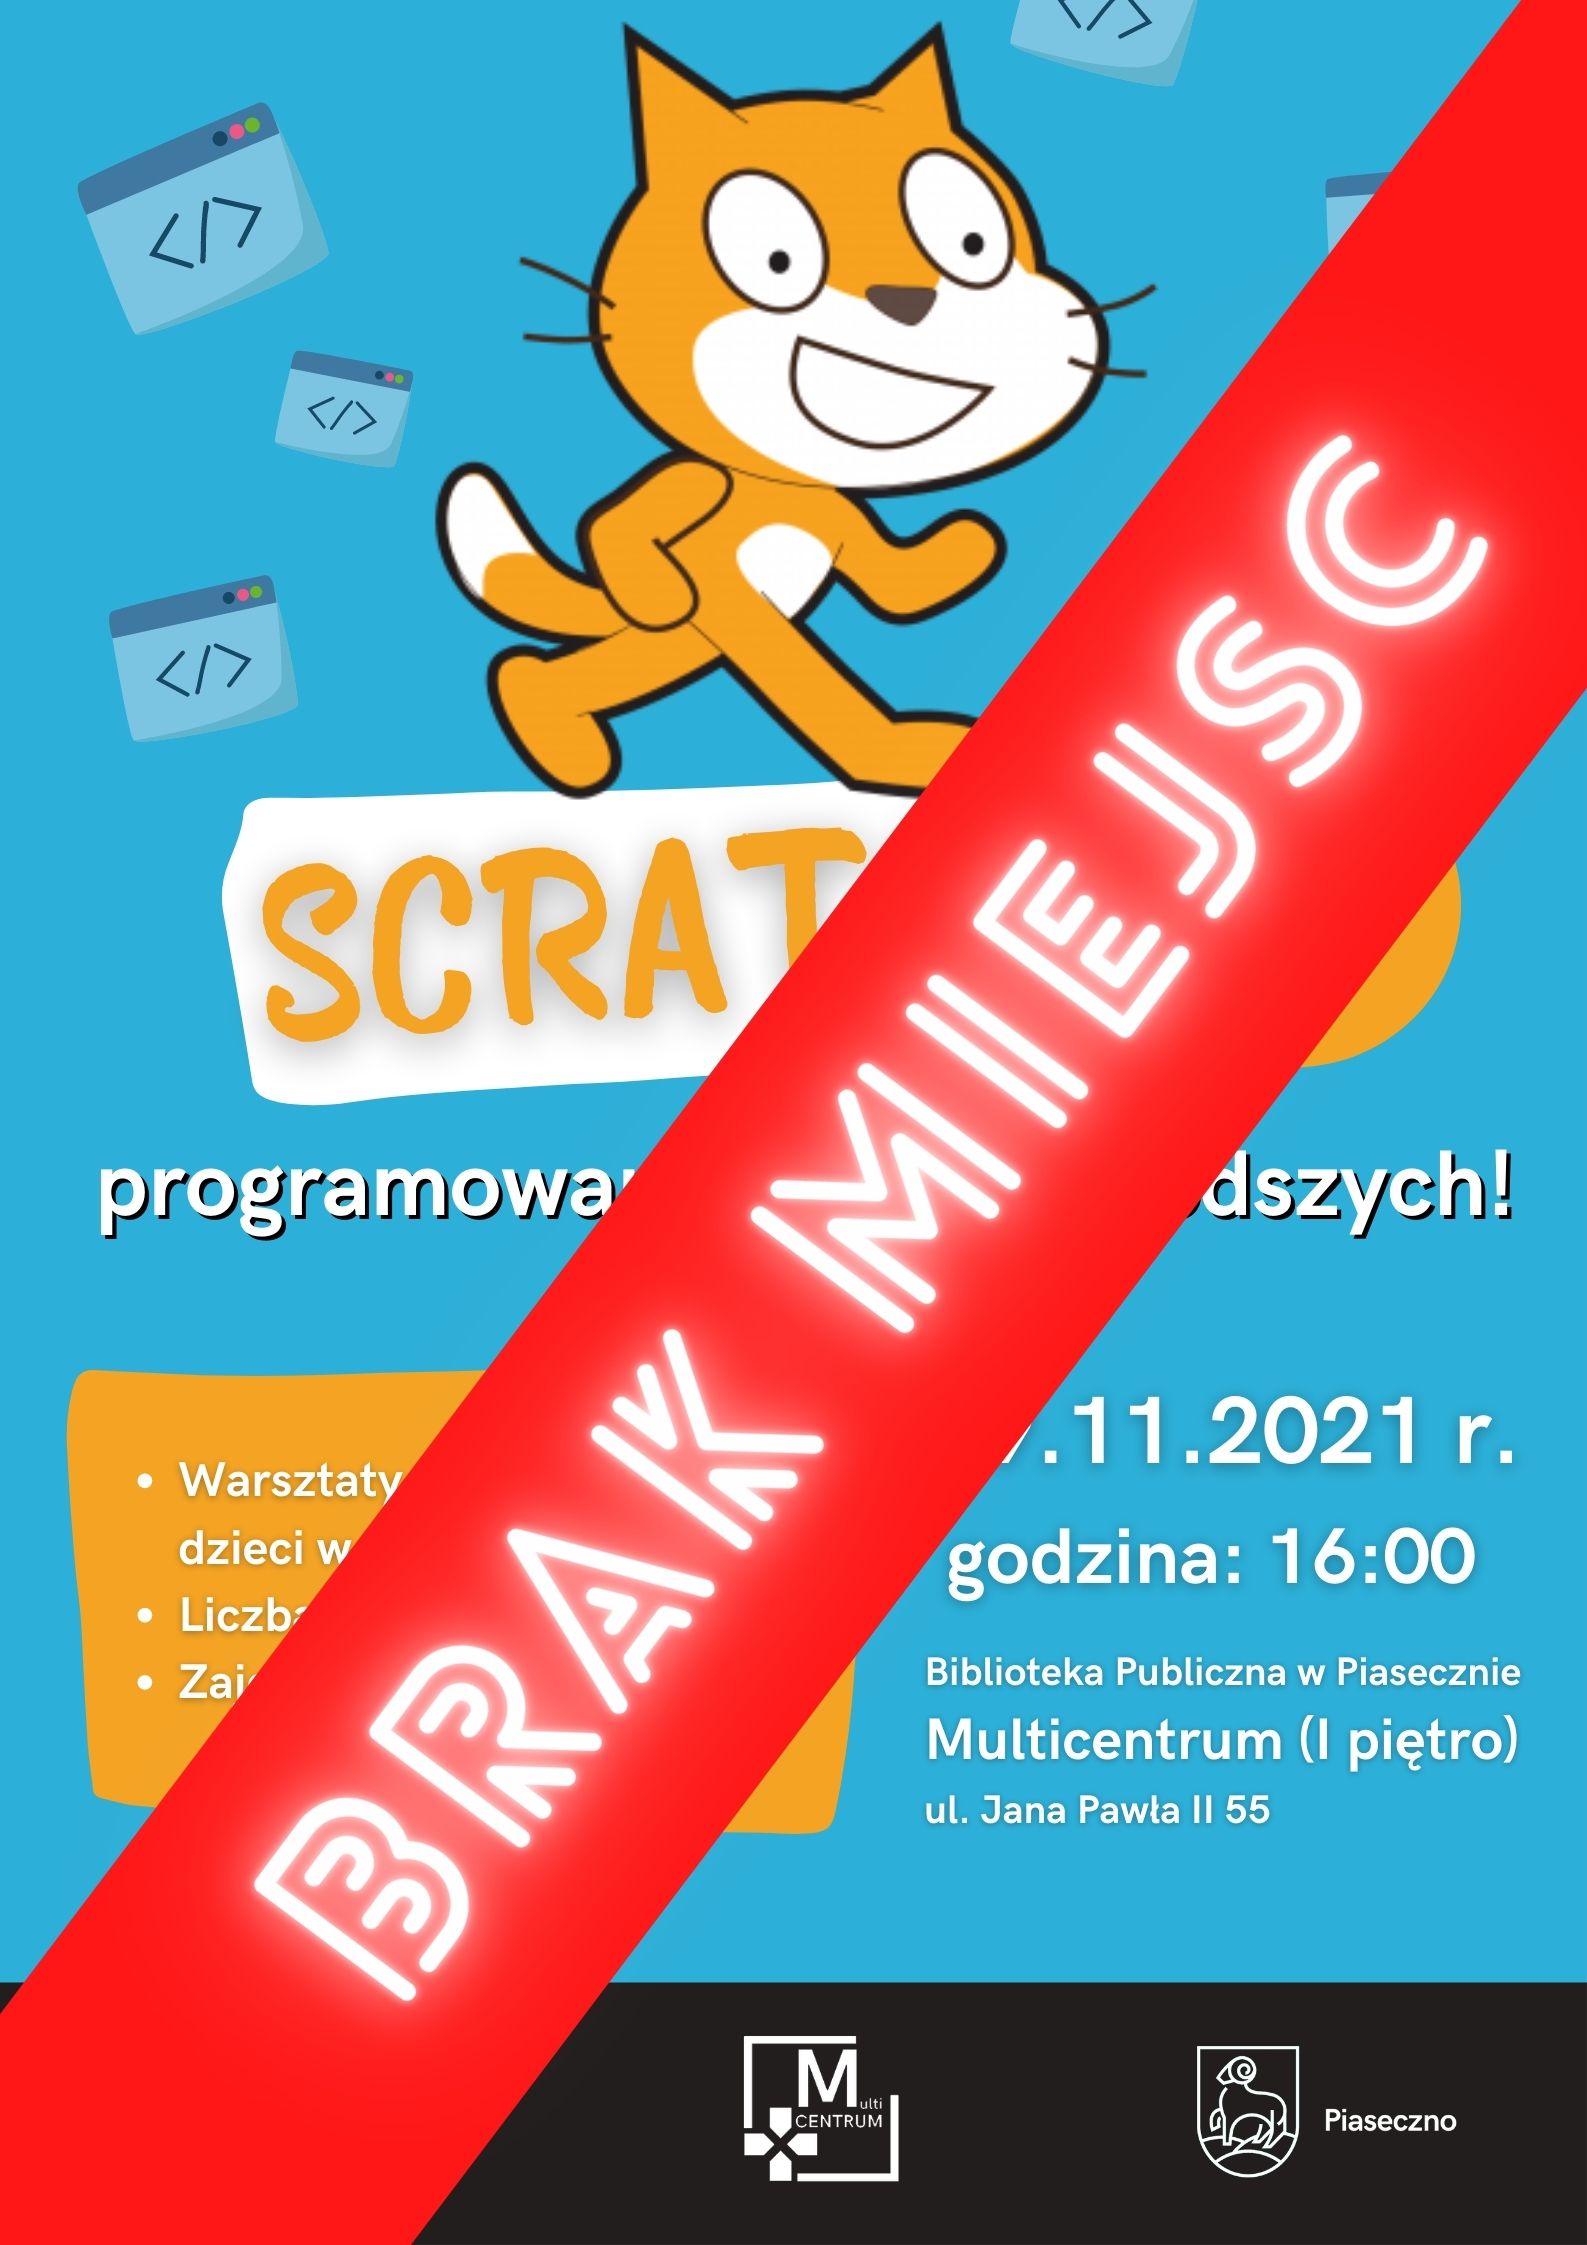 ScratchJr - programowanie dla najmłodszych